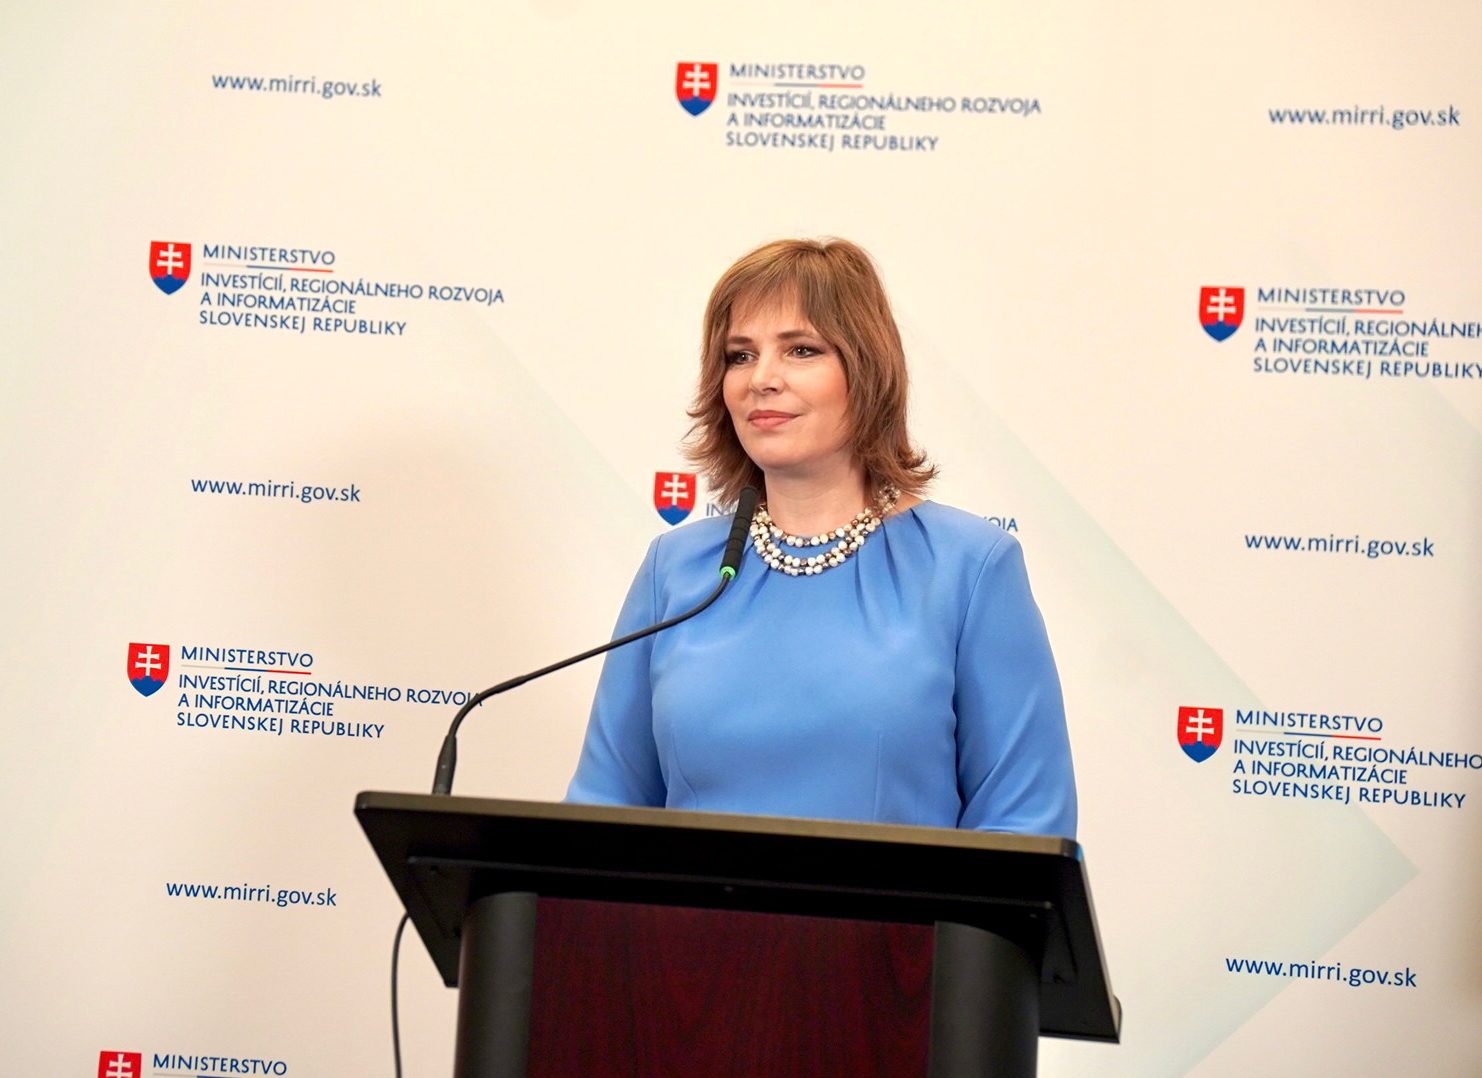 Vicepremiérka Remišová: Plán štátnych IT projektov z nových eurofondov dávame po prvý raz v histórii pripomienkovať odbornej verejnosti ešte pred zaradením do realizácie